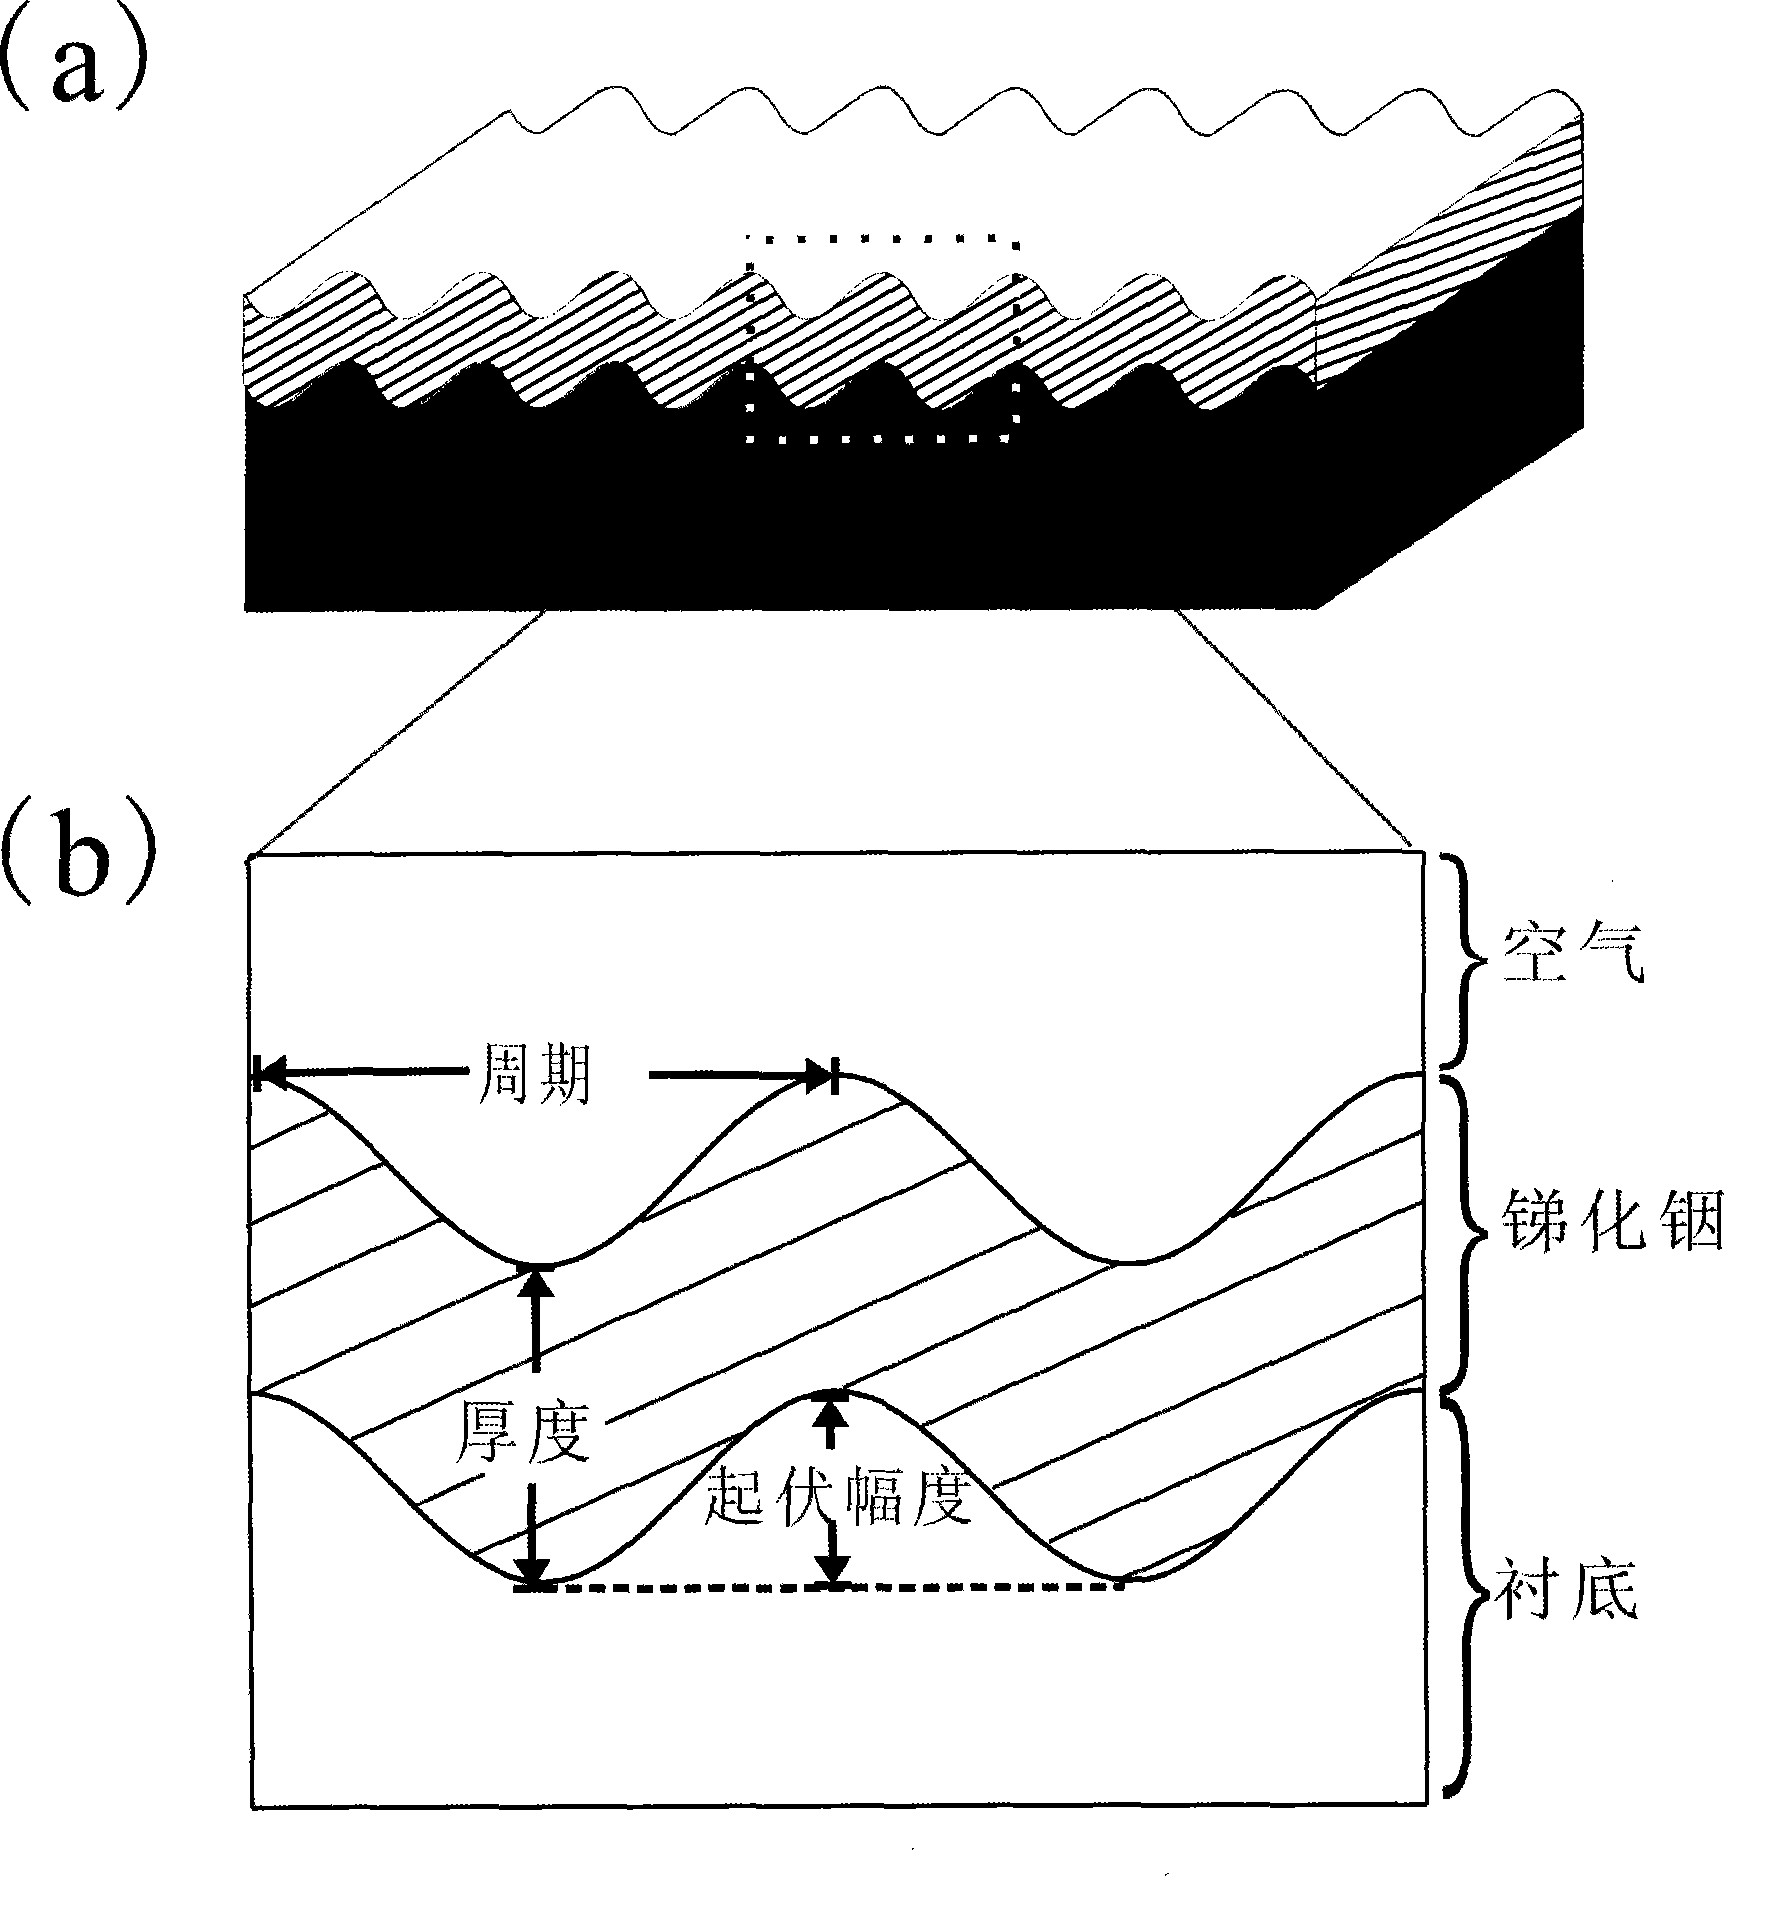 Ultra-thin multi-channel terahertz filter having temperature regulation